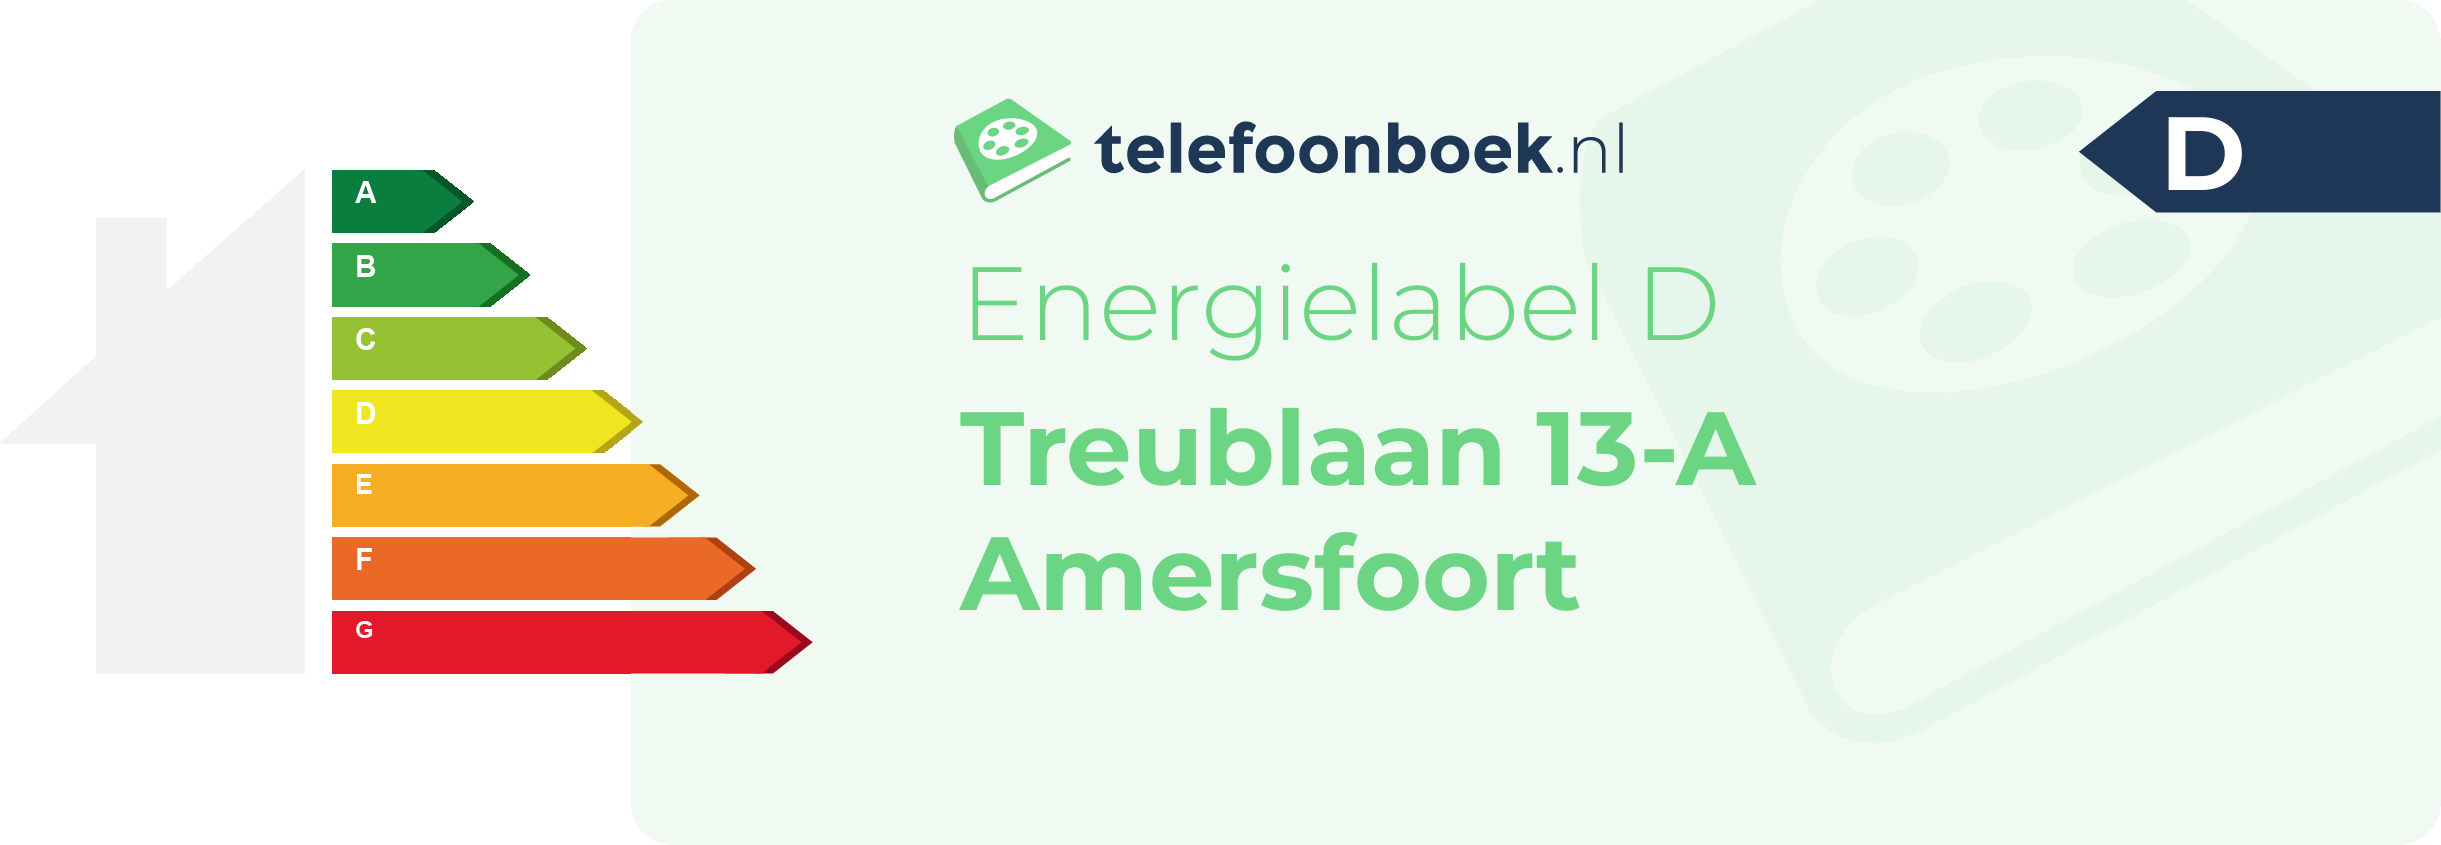 Energielabel Treublaan 13-A Amersfoort